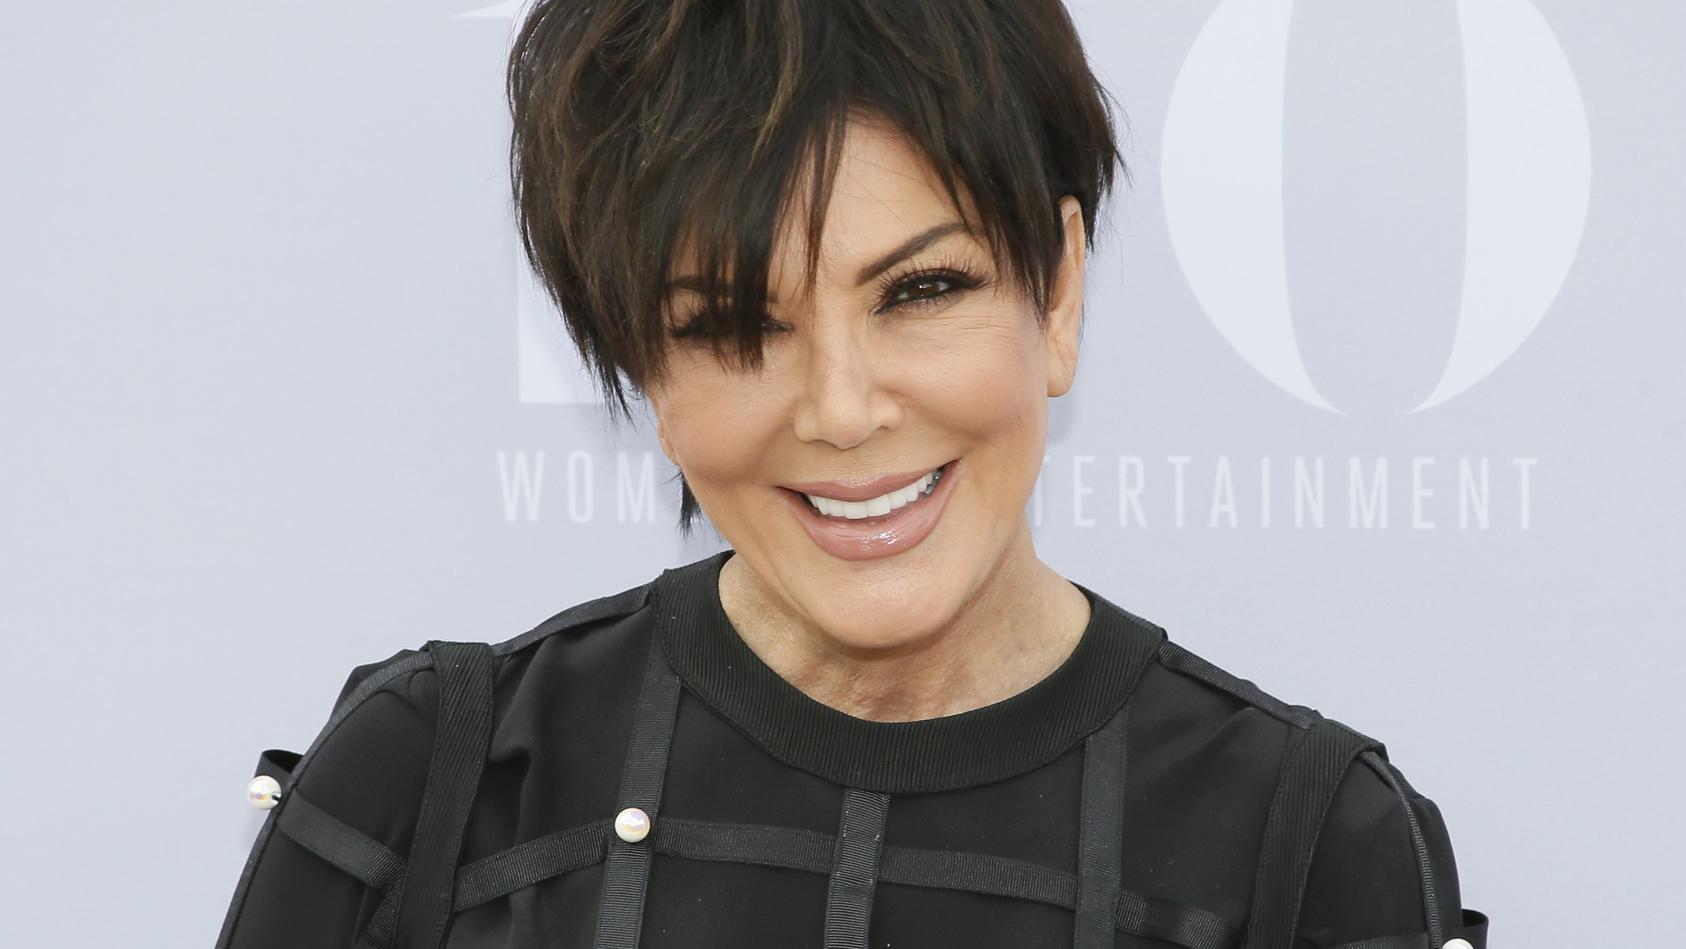 Kris Jenner perfekt gestylt und frisiert - so wie man sie üblicherweise kennt. Jetzt zeigte sich die 63-Jährige bei Instagram ganz natürlich.